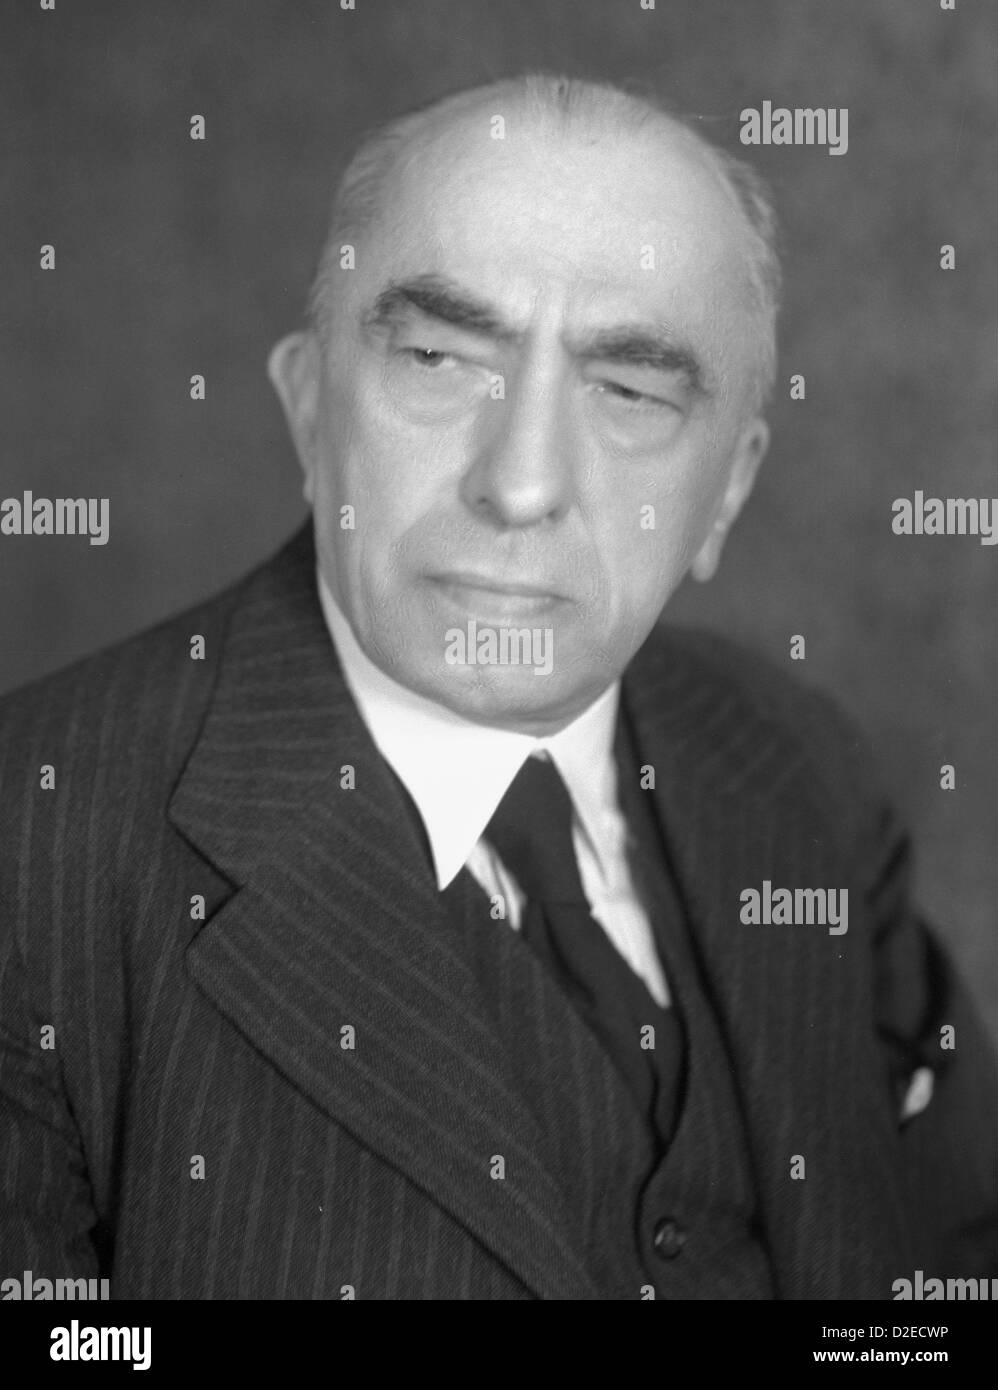 Emil HACHA, Czech Republic, Czechoslovakia, politics, election, president,  presidential Stock Photo - Alamy